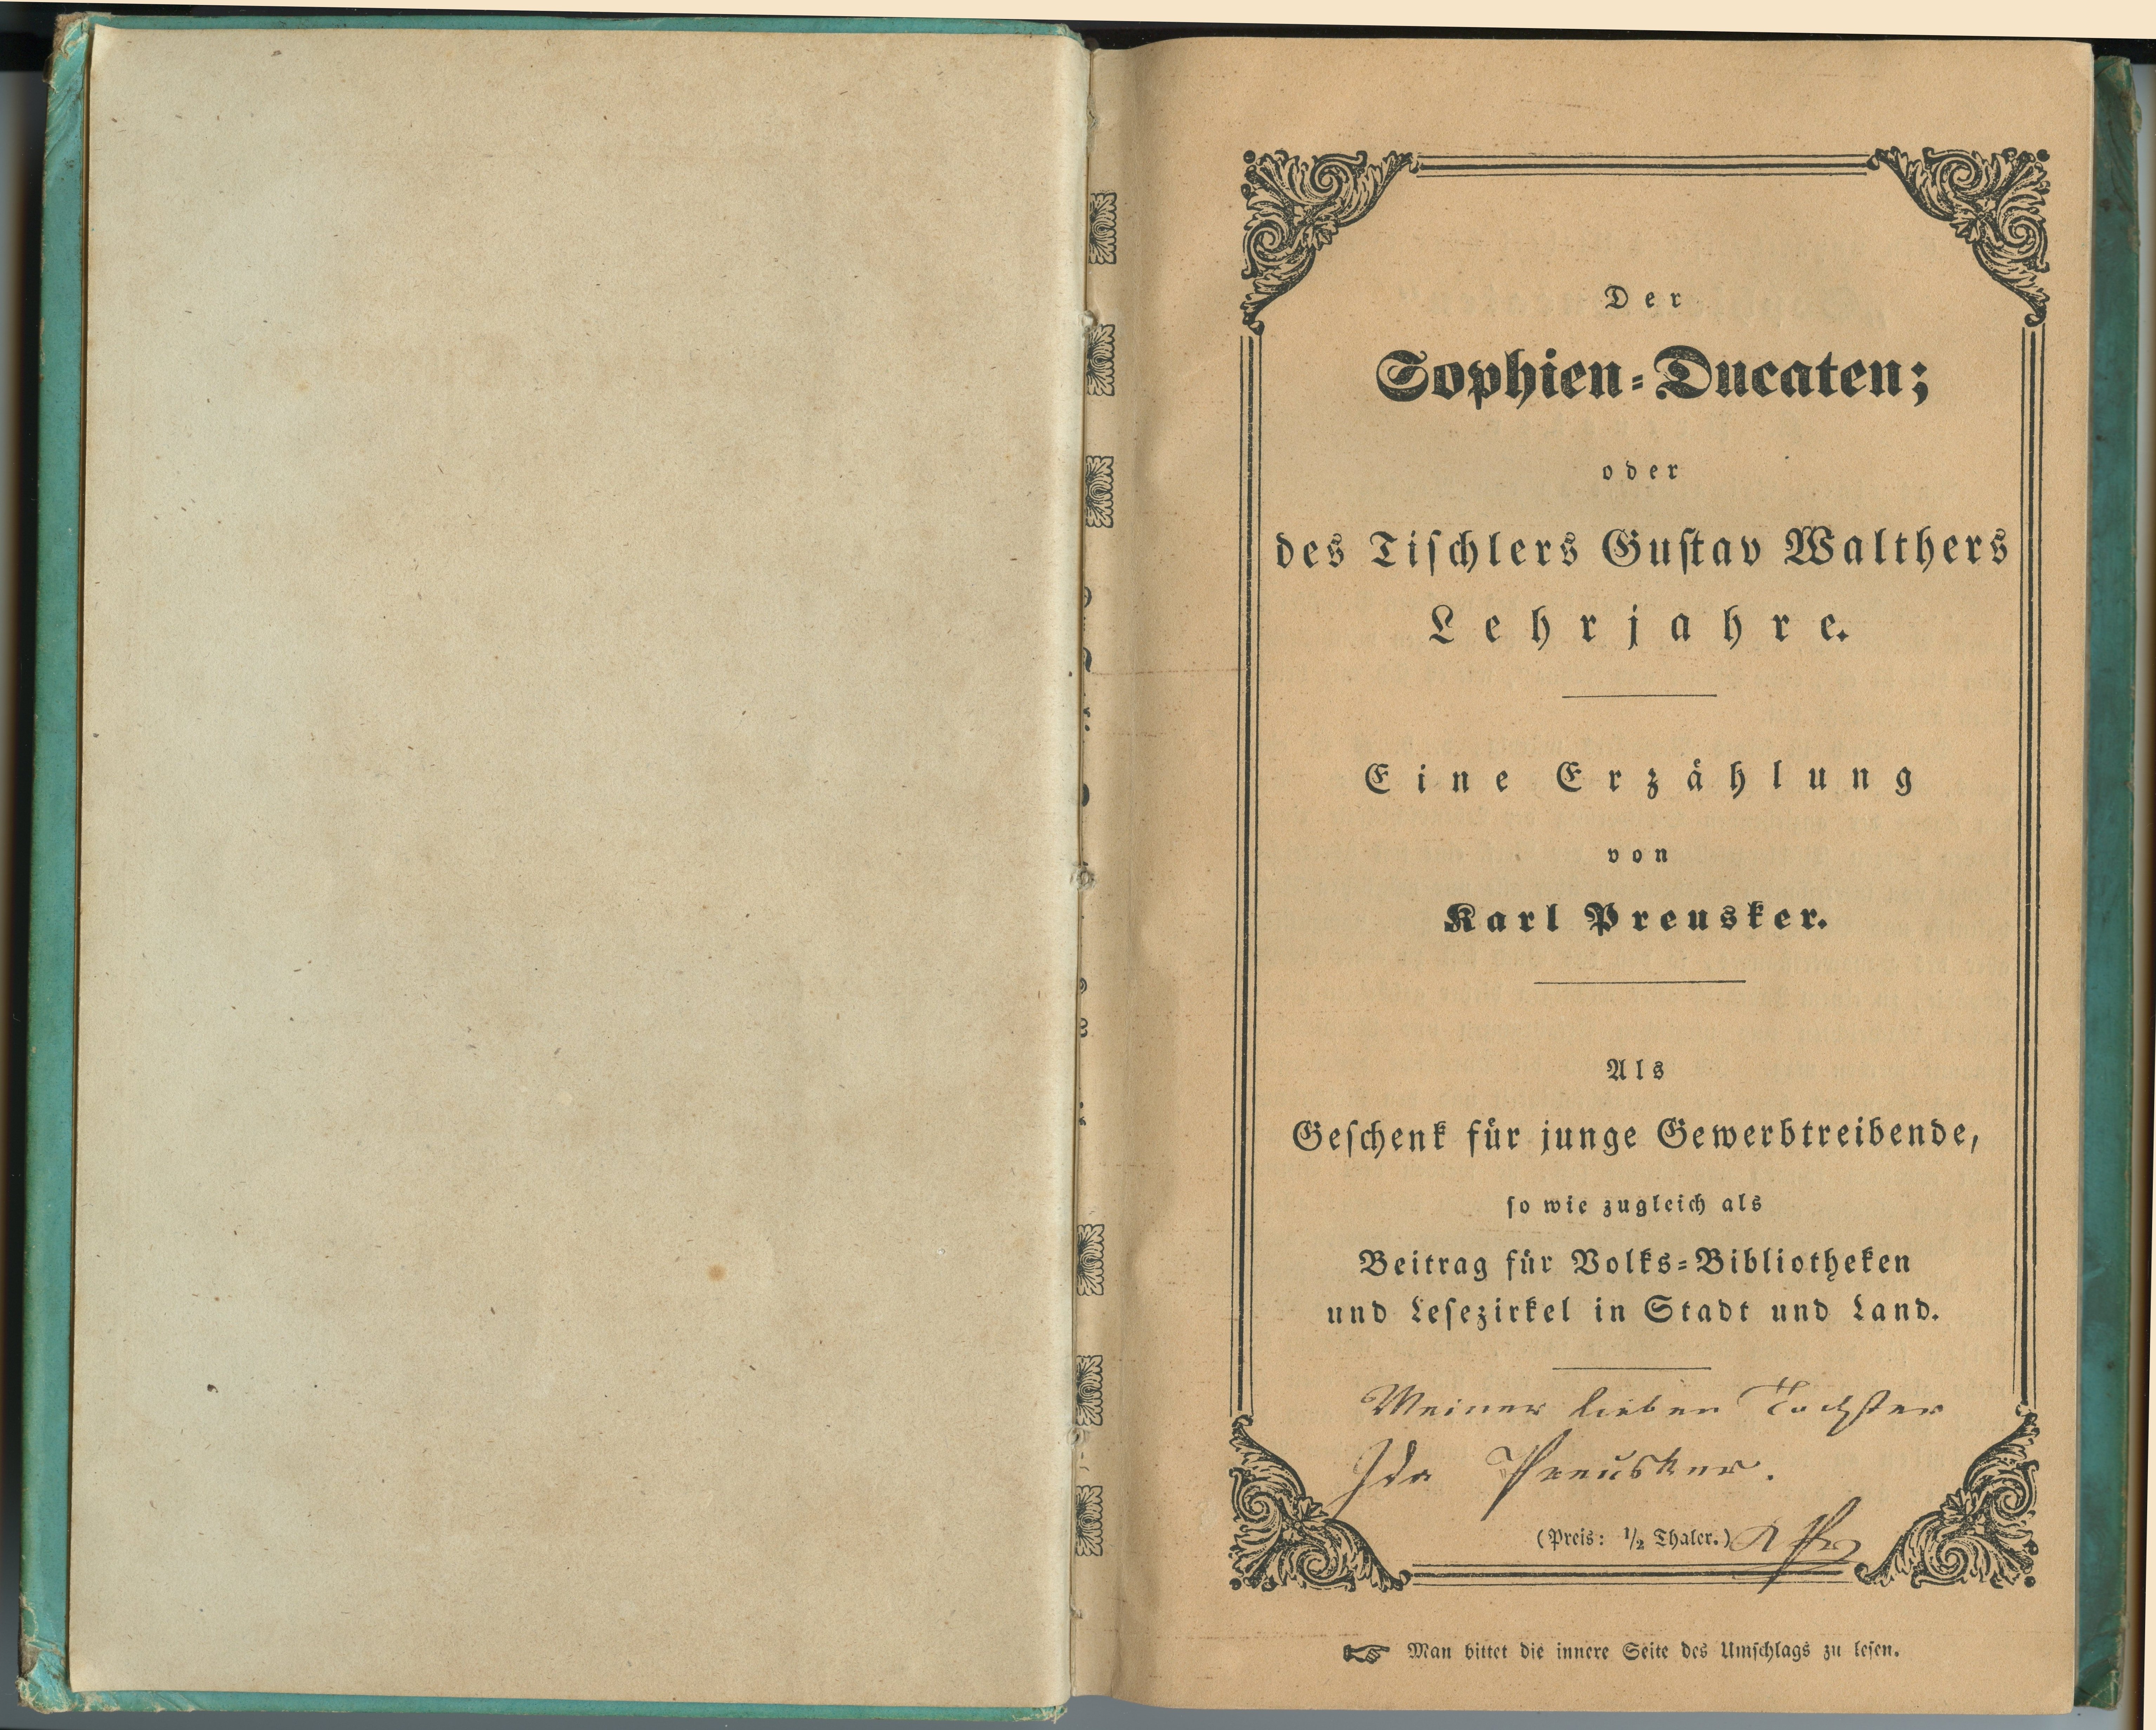 Preusker, Karl: Der Sophien-Ducaten [...], 1845 (Museum Alte Lateinschule CC BY-NC-SA)